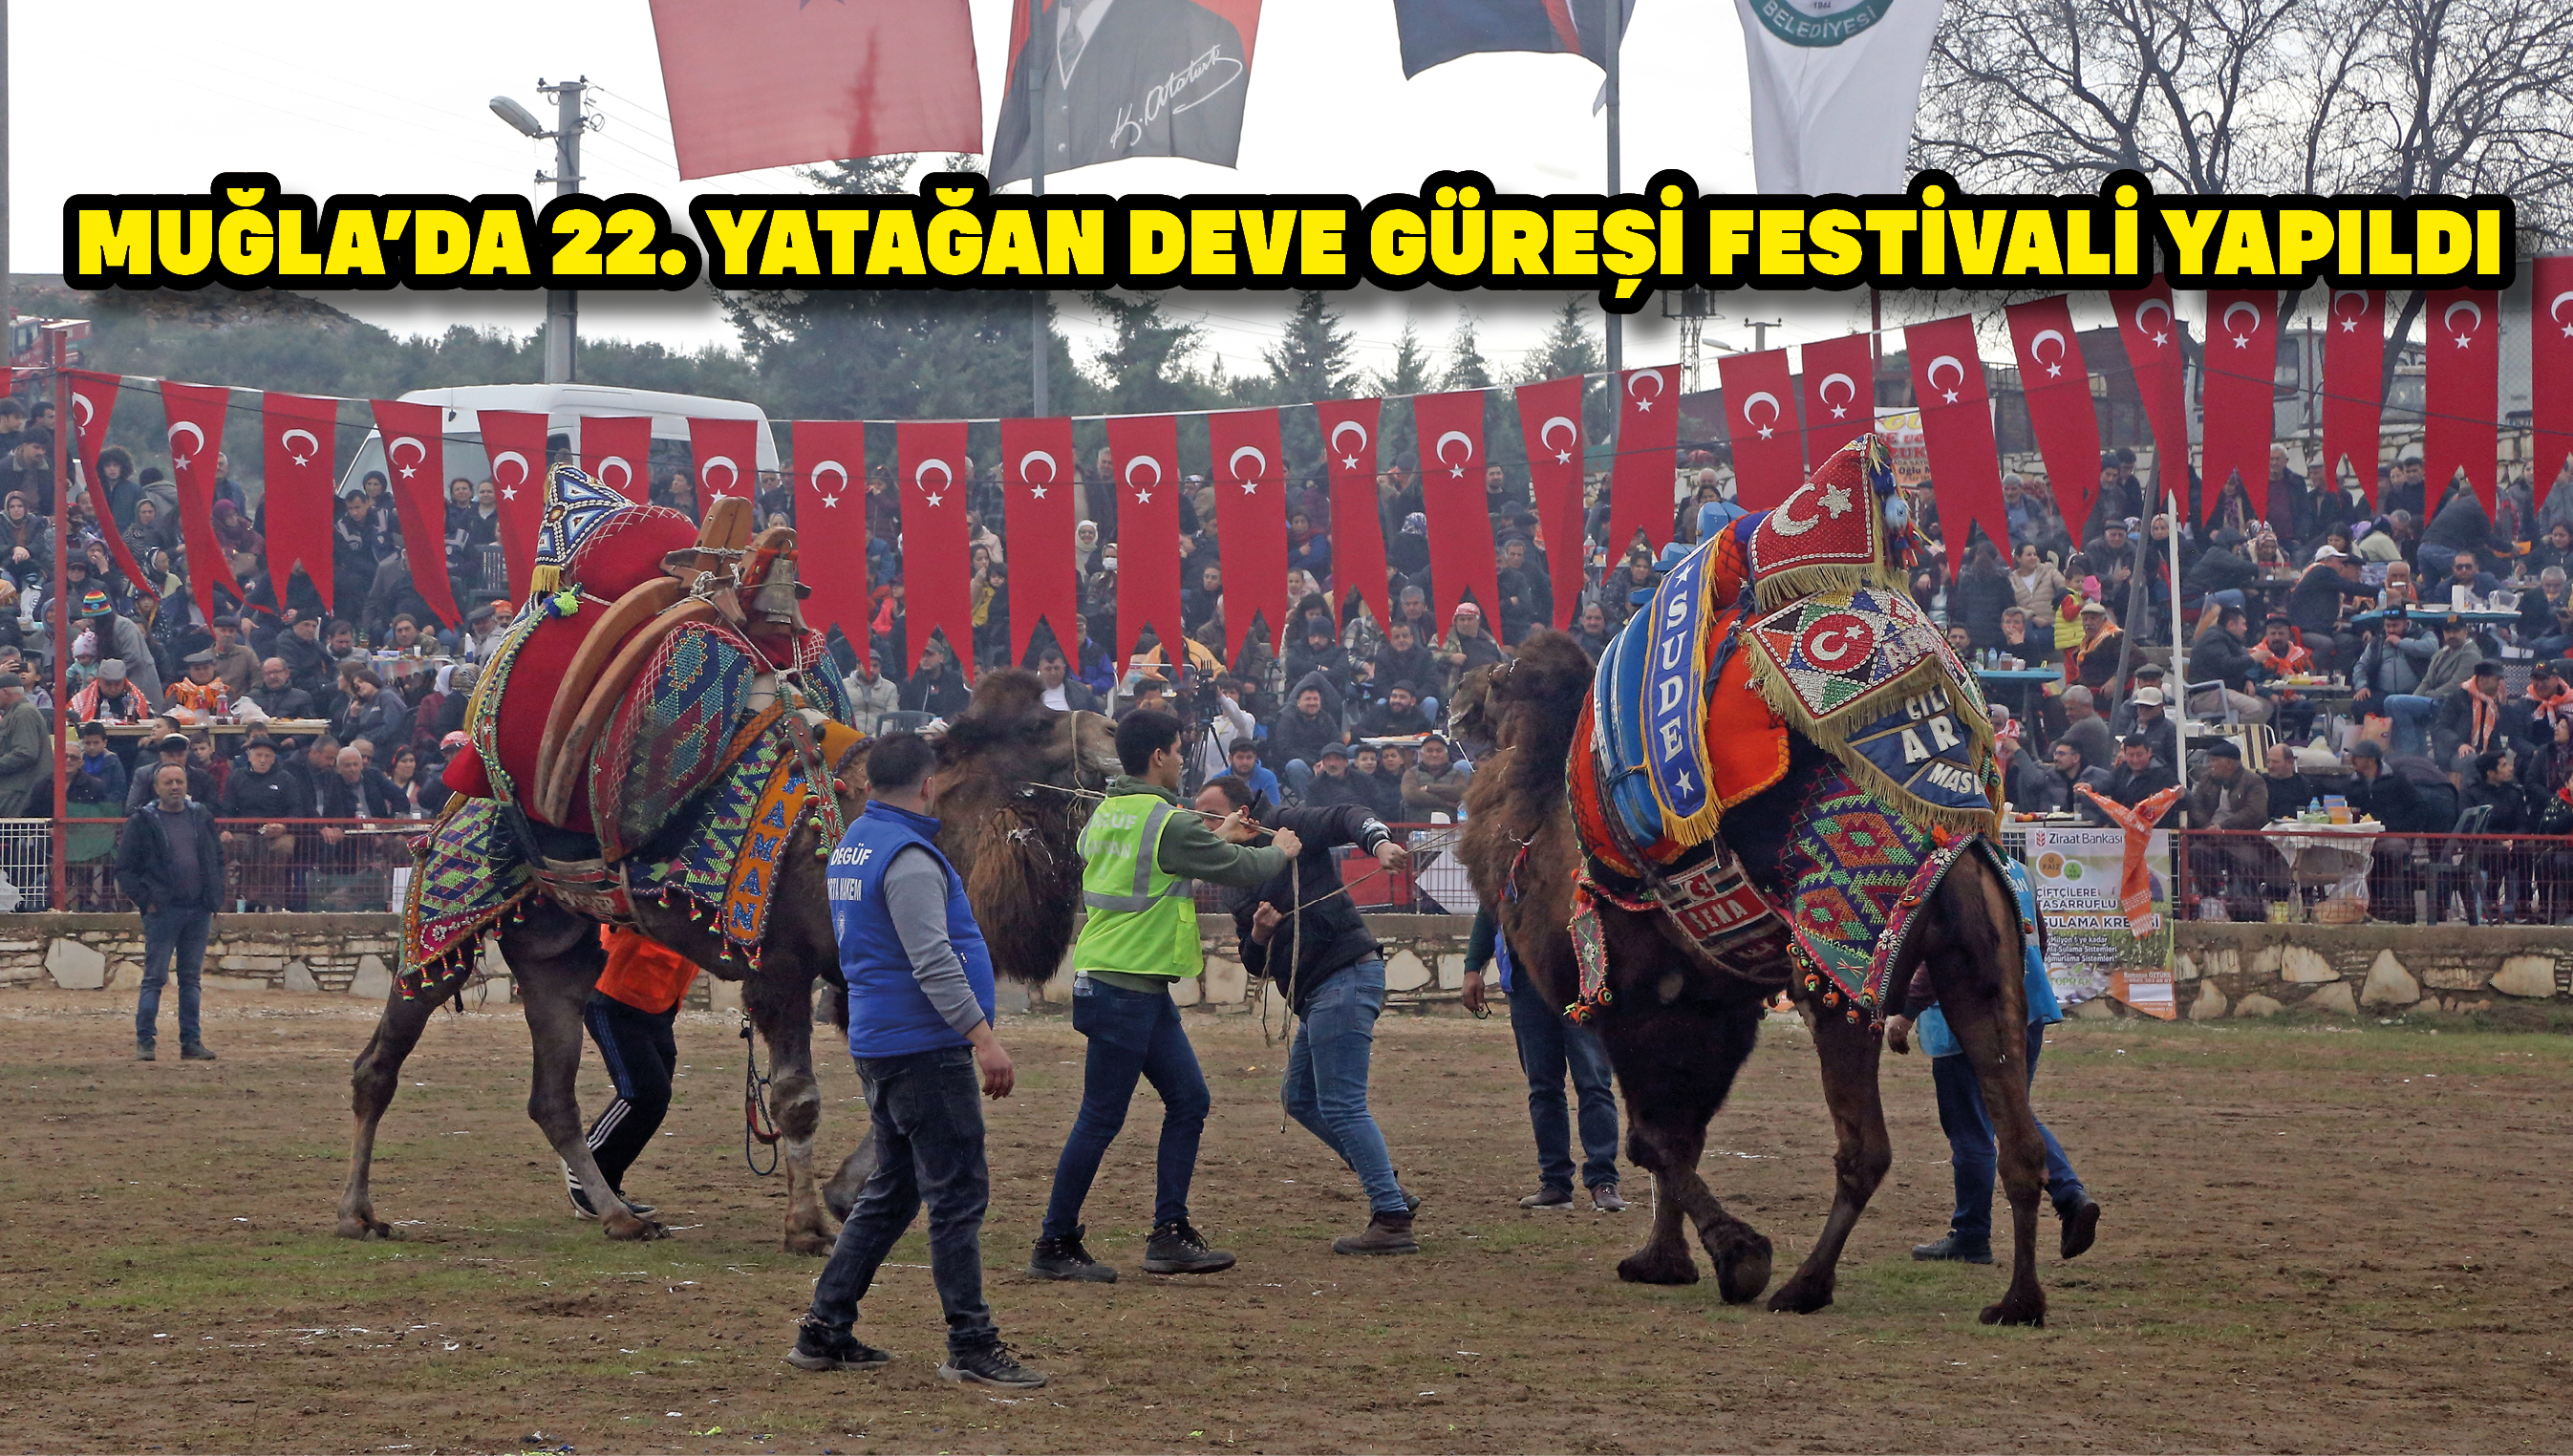 Muğla'da 22. Yatağan Deve Güreşi Festivali yapıldı